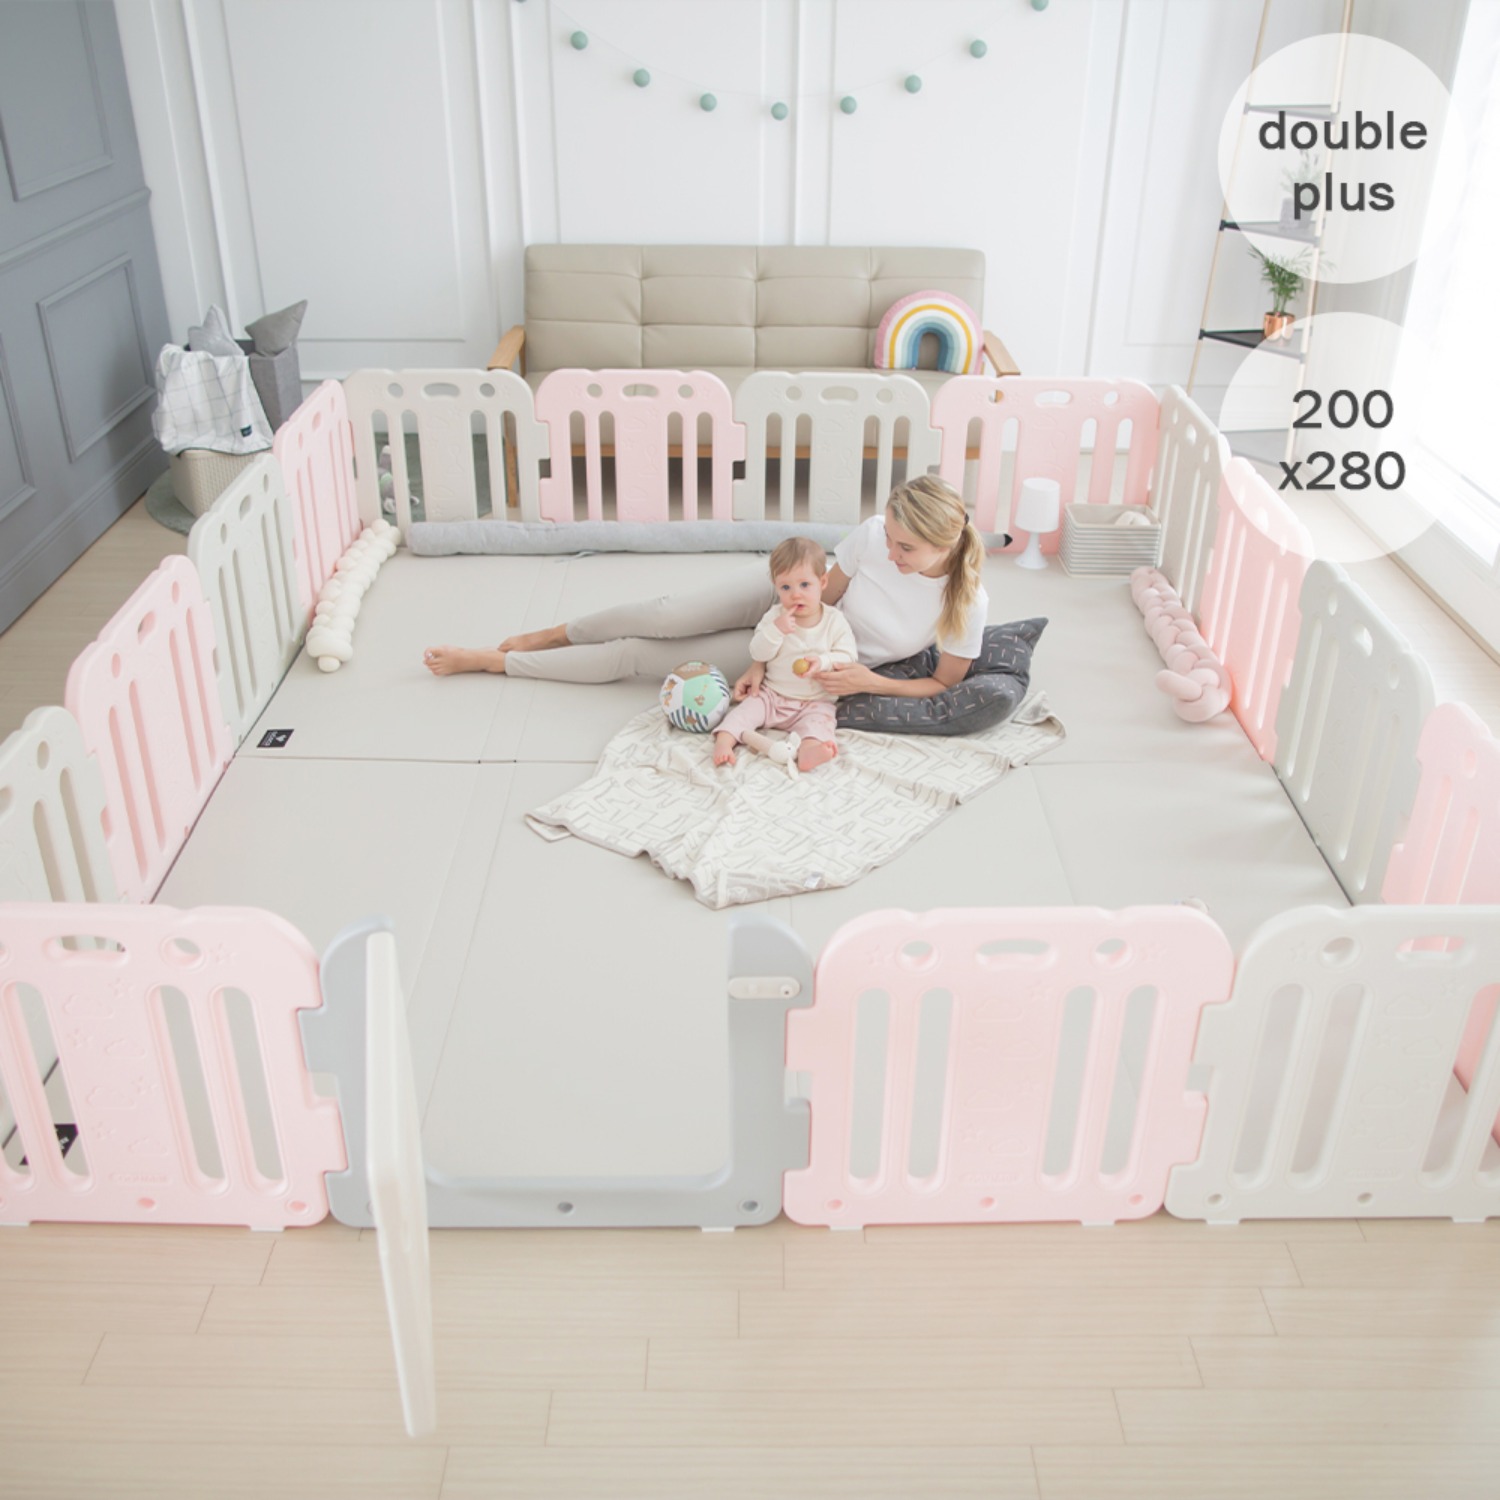 double plus baby room set 200 x 280